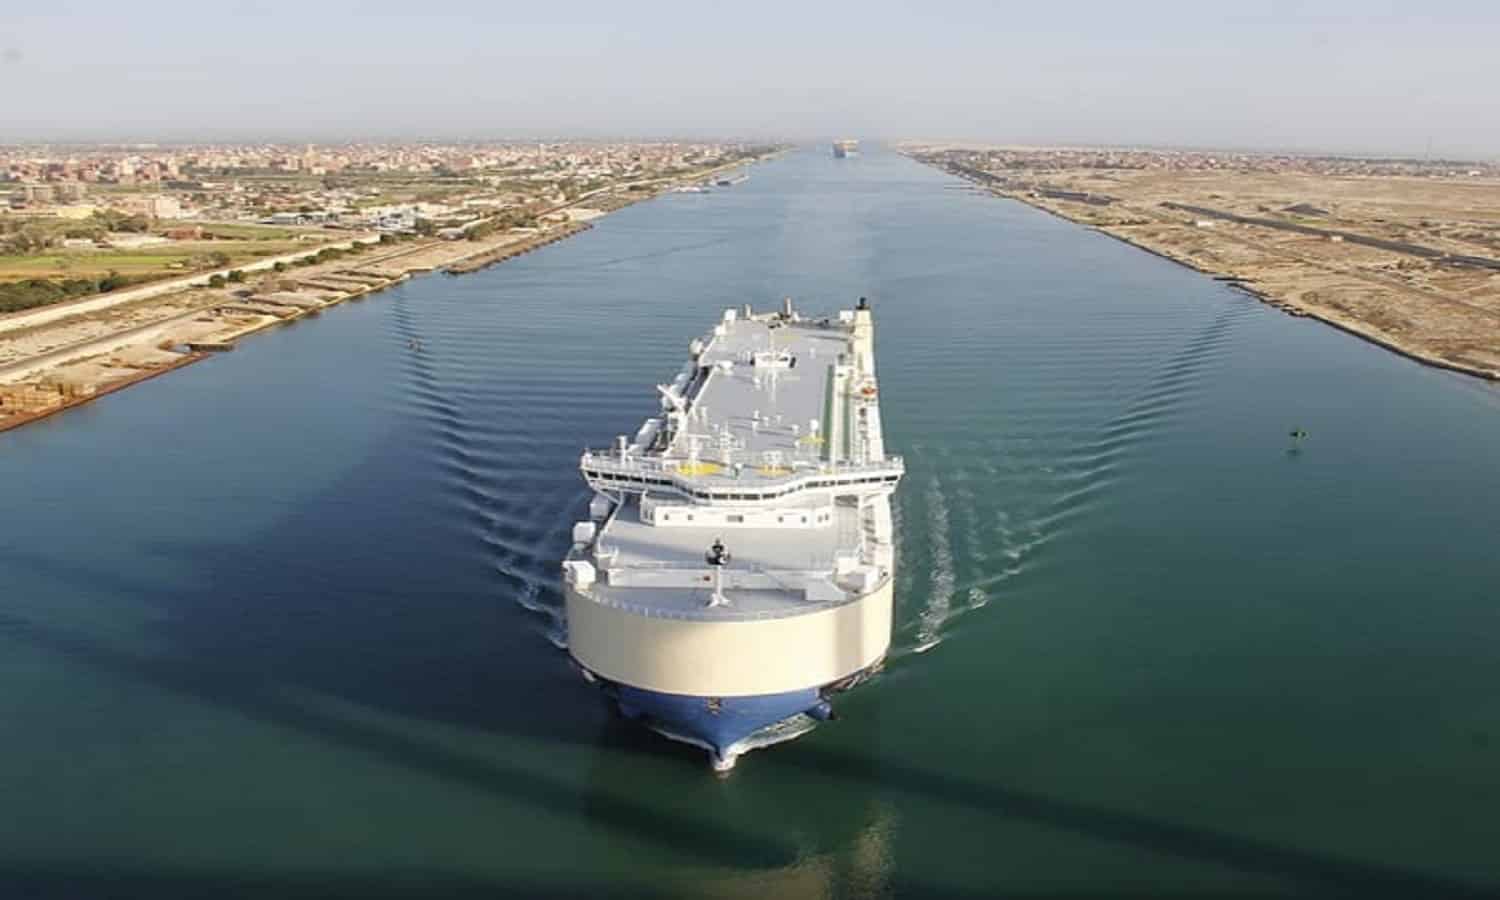  قناة السويس تشهد عبور 93 سفينة بإجمالي حمولات 4.4 مليون طن
